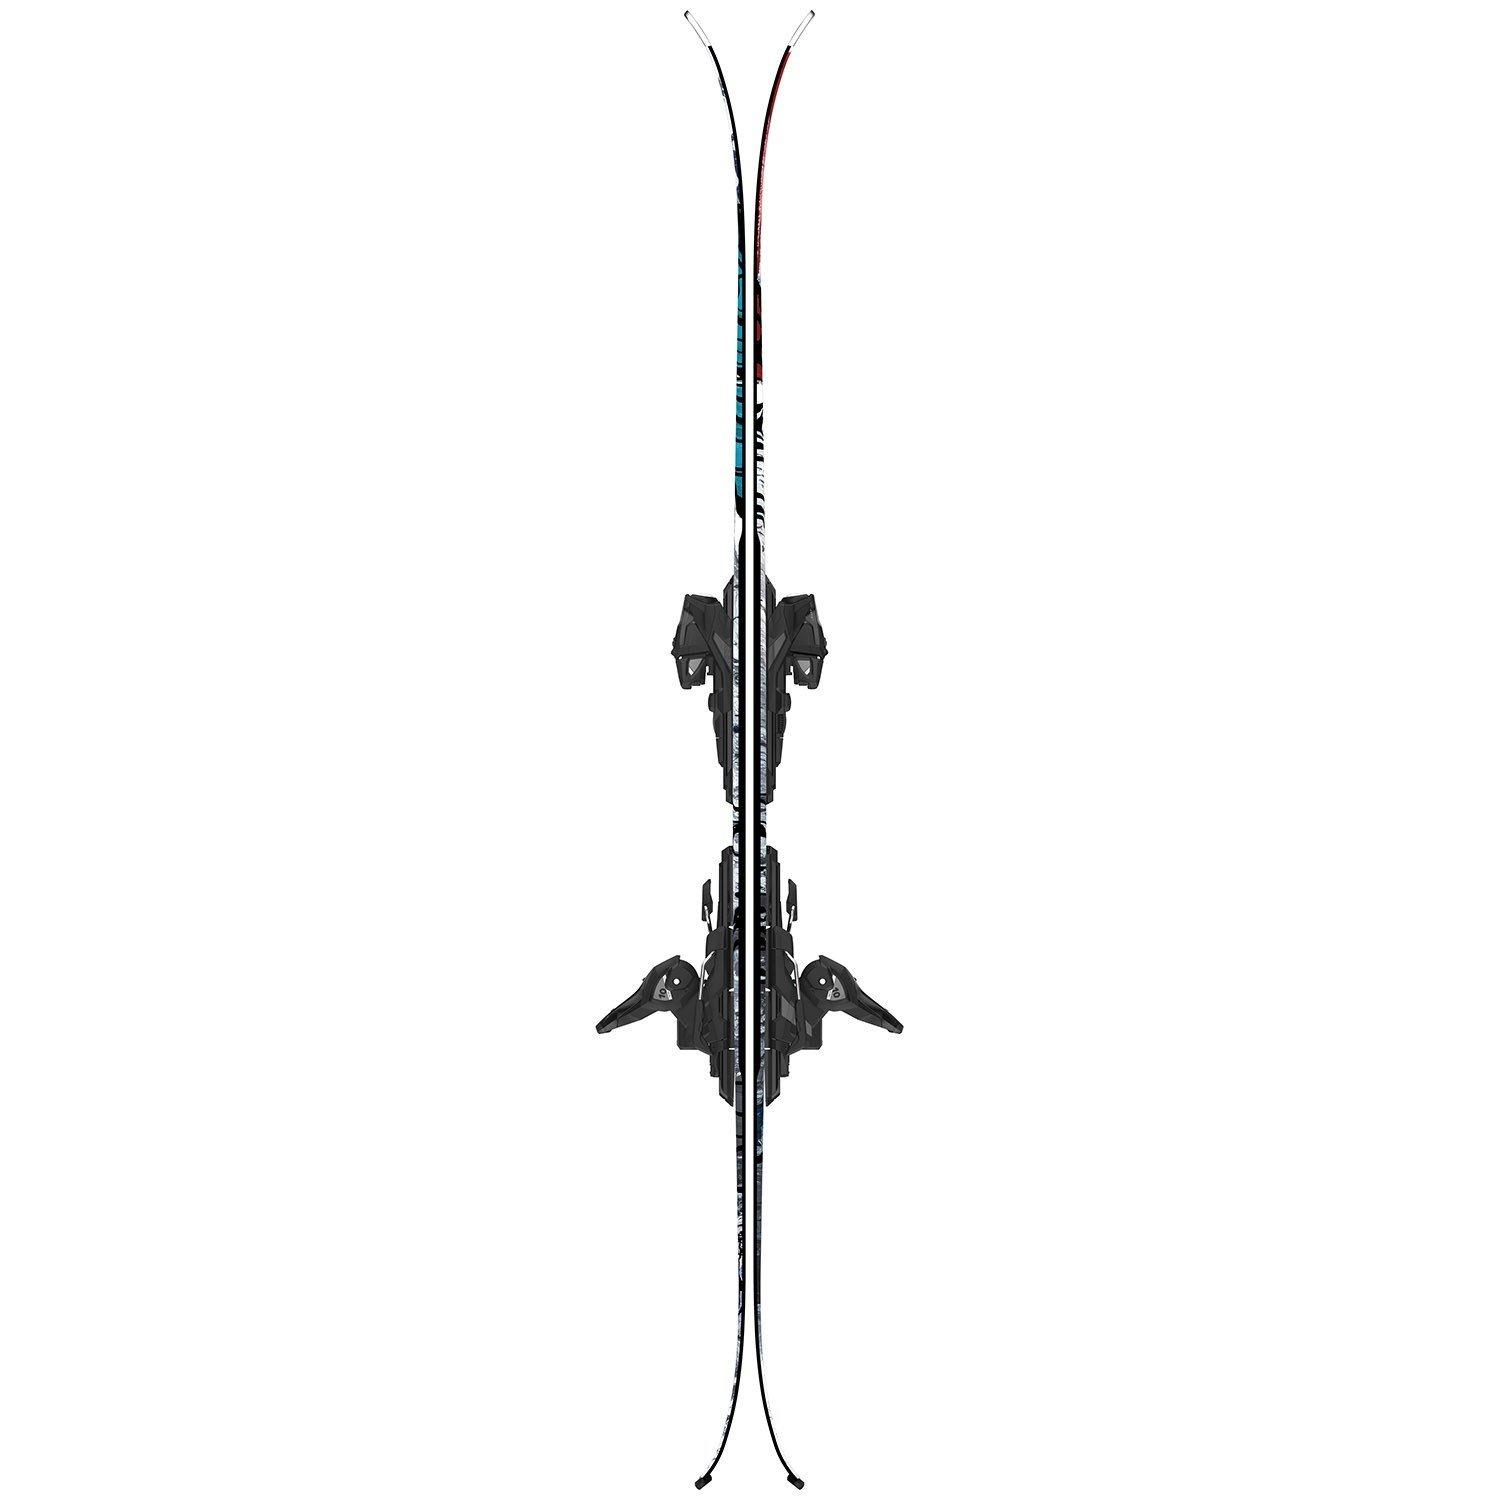 Atomic Bent 85 Ski with M10 GW Binding